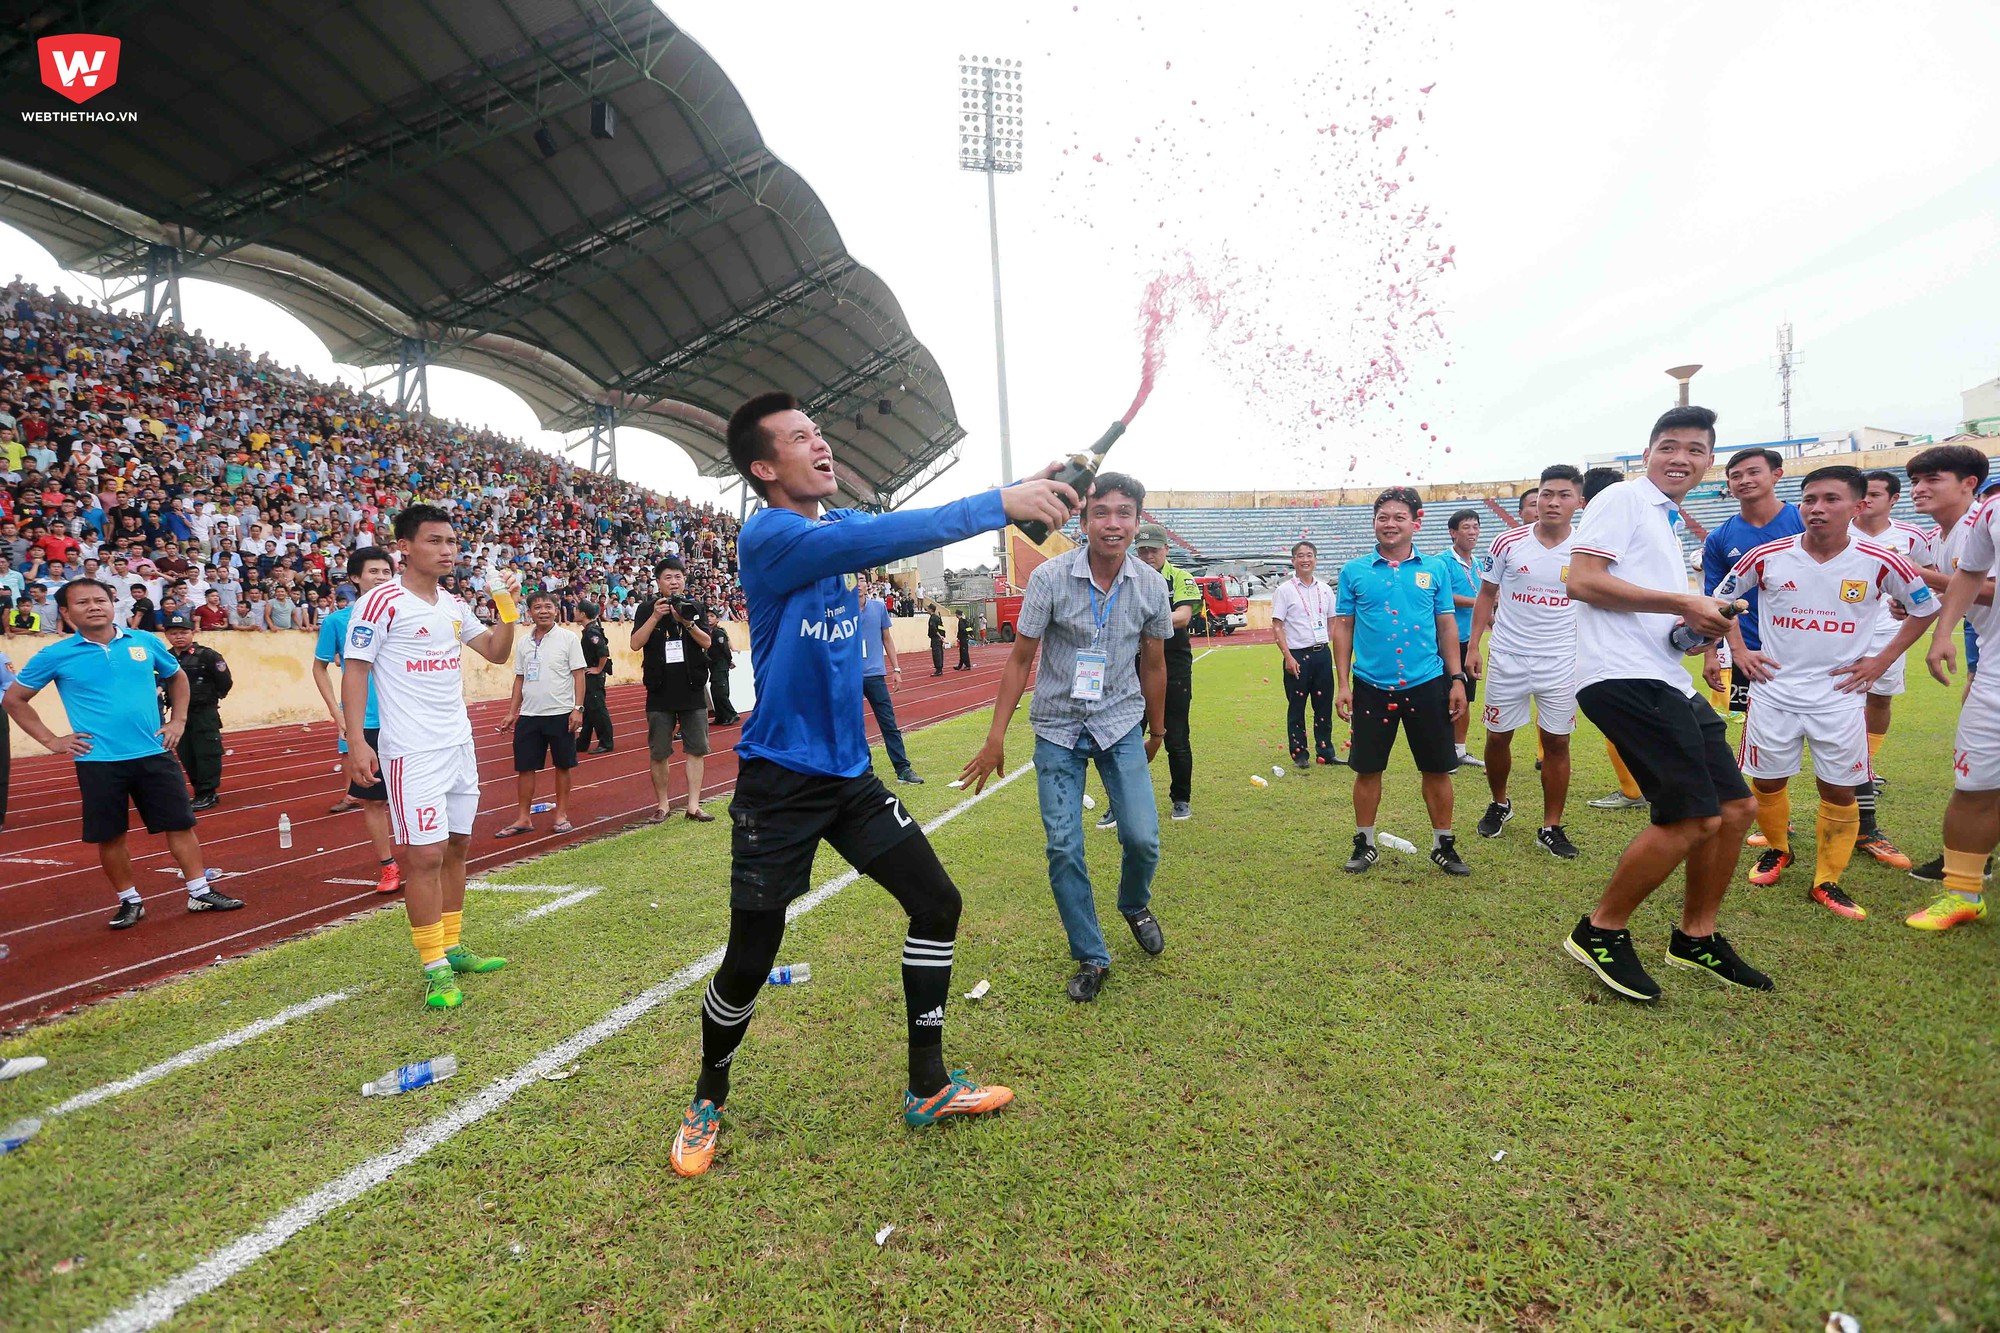 Họ ăn mừng cho bao năm tháng chờ đợi để trở lại sân chơi bóng đá sô 1 Việt Nam.